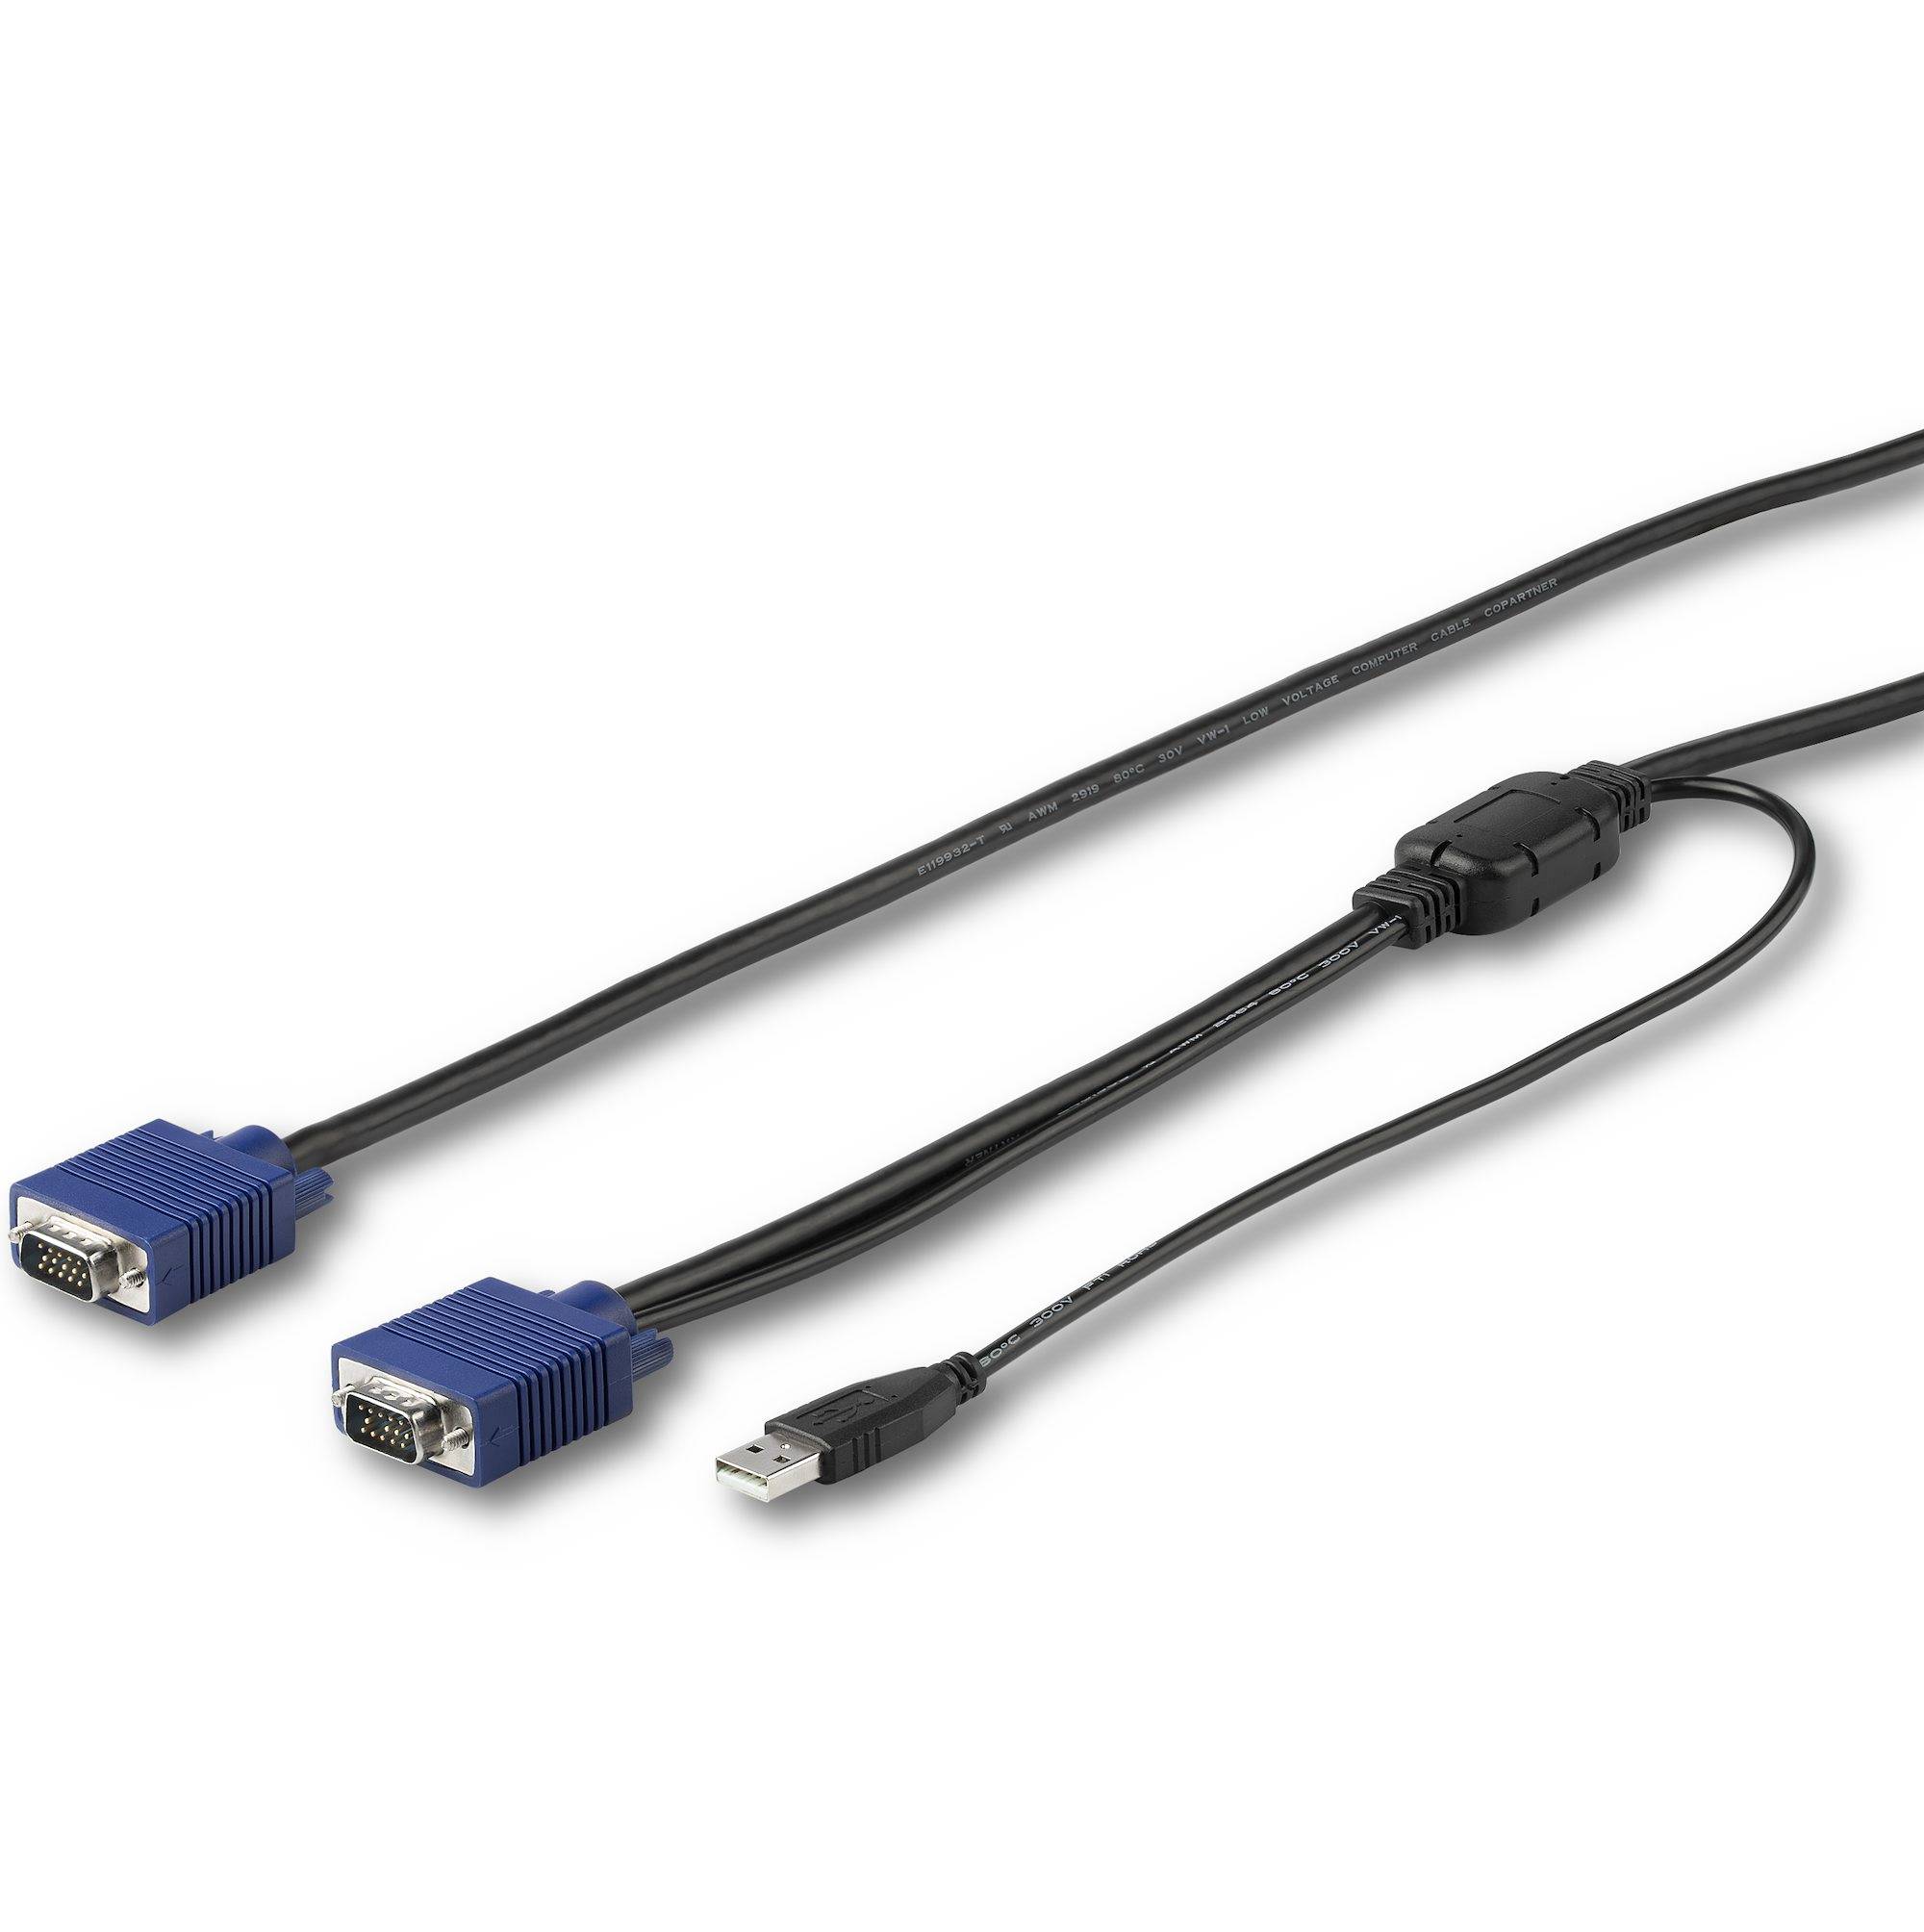 Rca Informatique - Image du produit : 10 FT. (3 M) USB KVM CABLE - RACKMOUNT CONSOLE CABLE